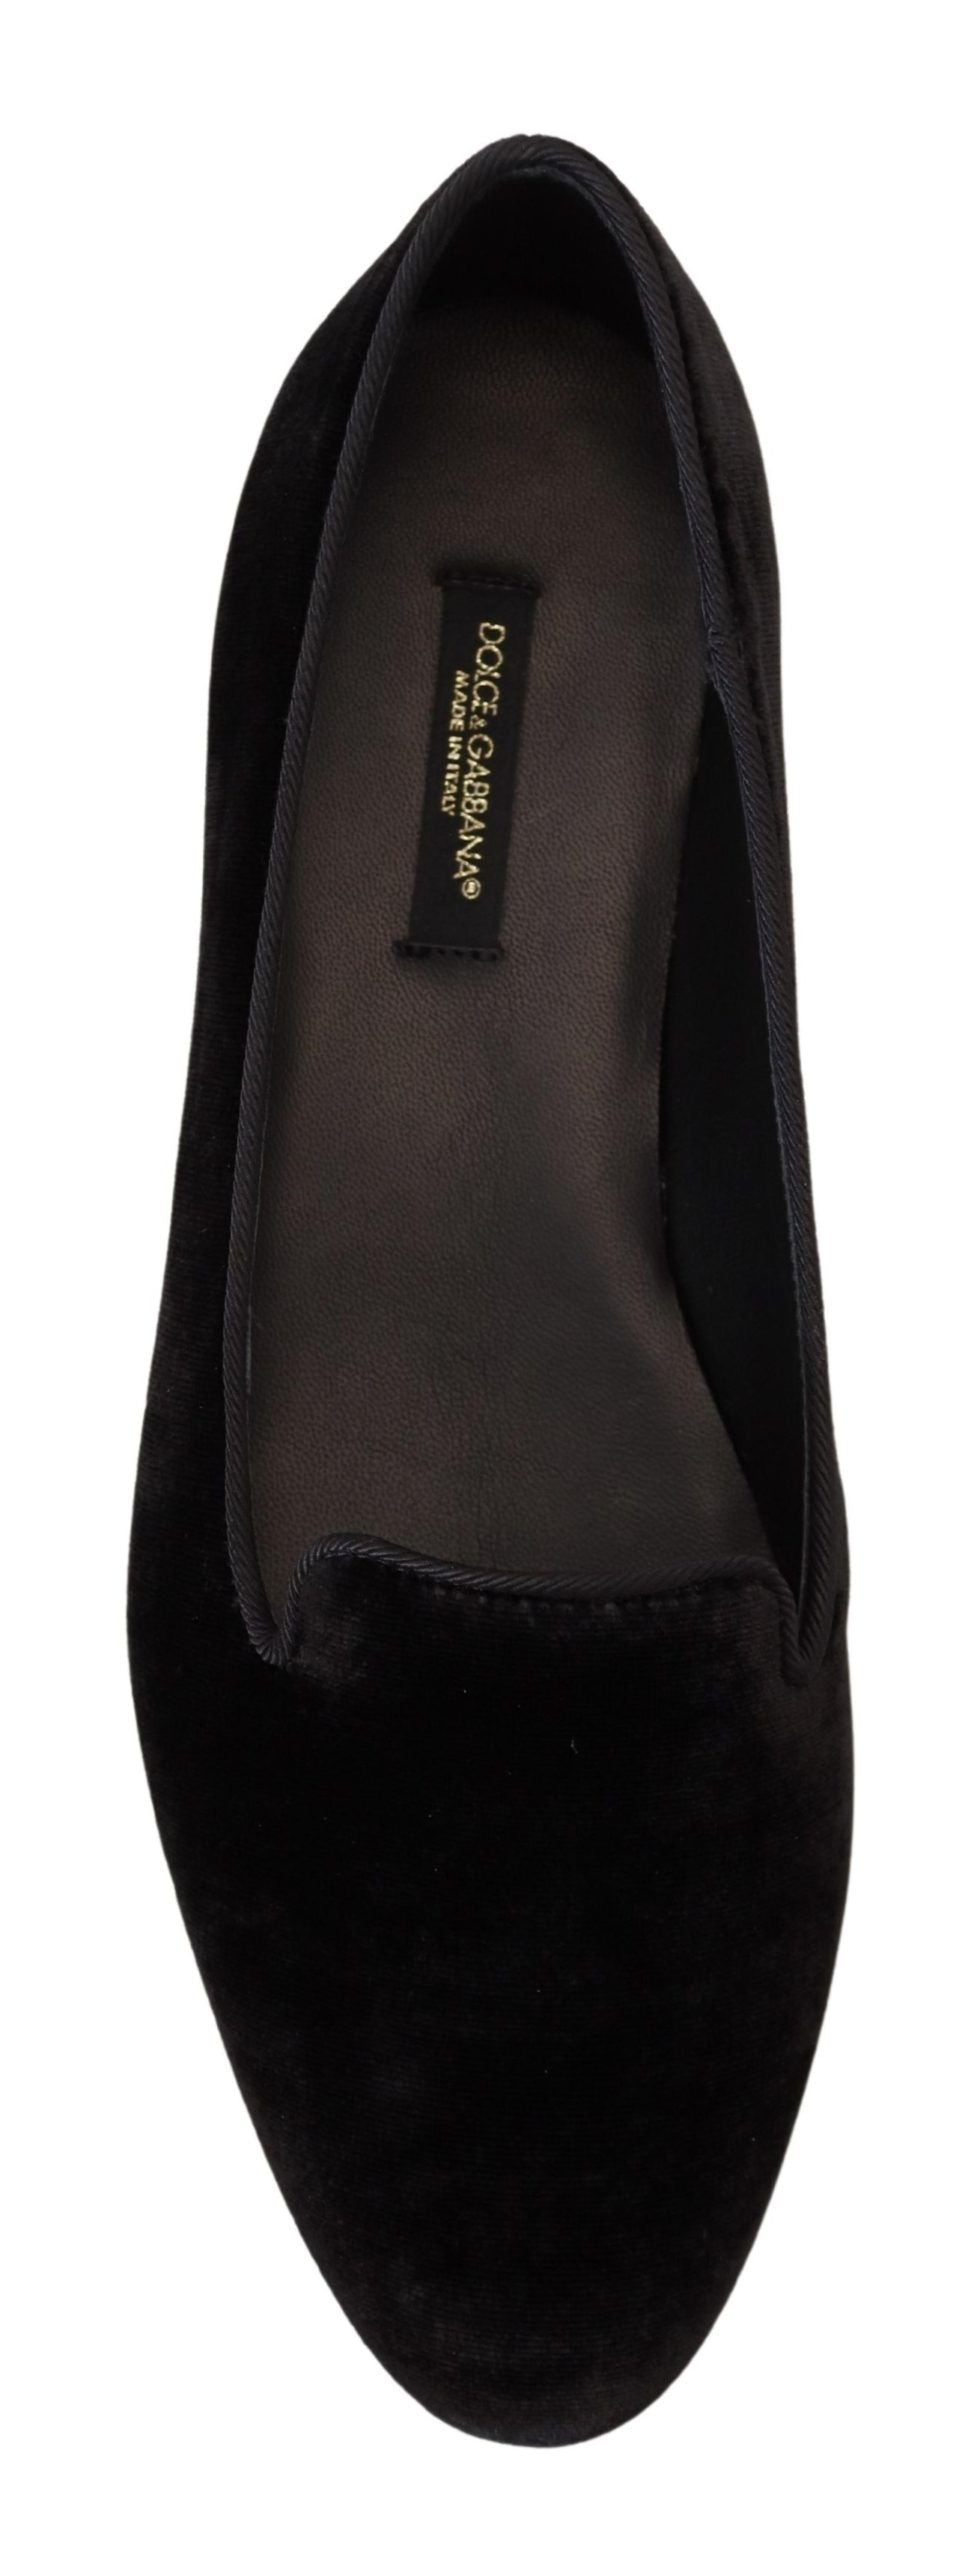 Elegant Black Silk-Blend Loafers